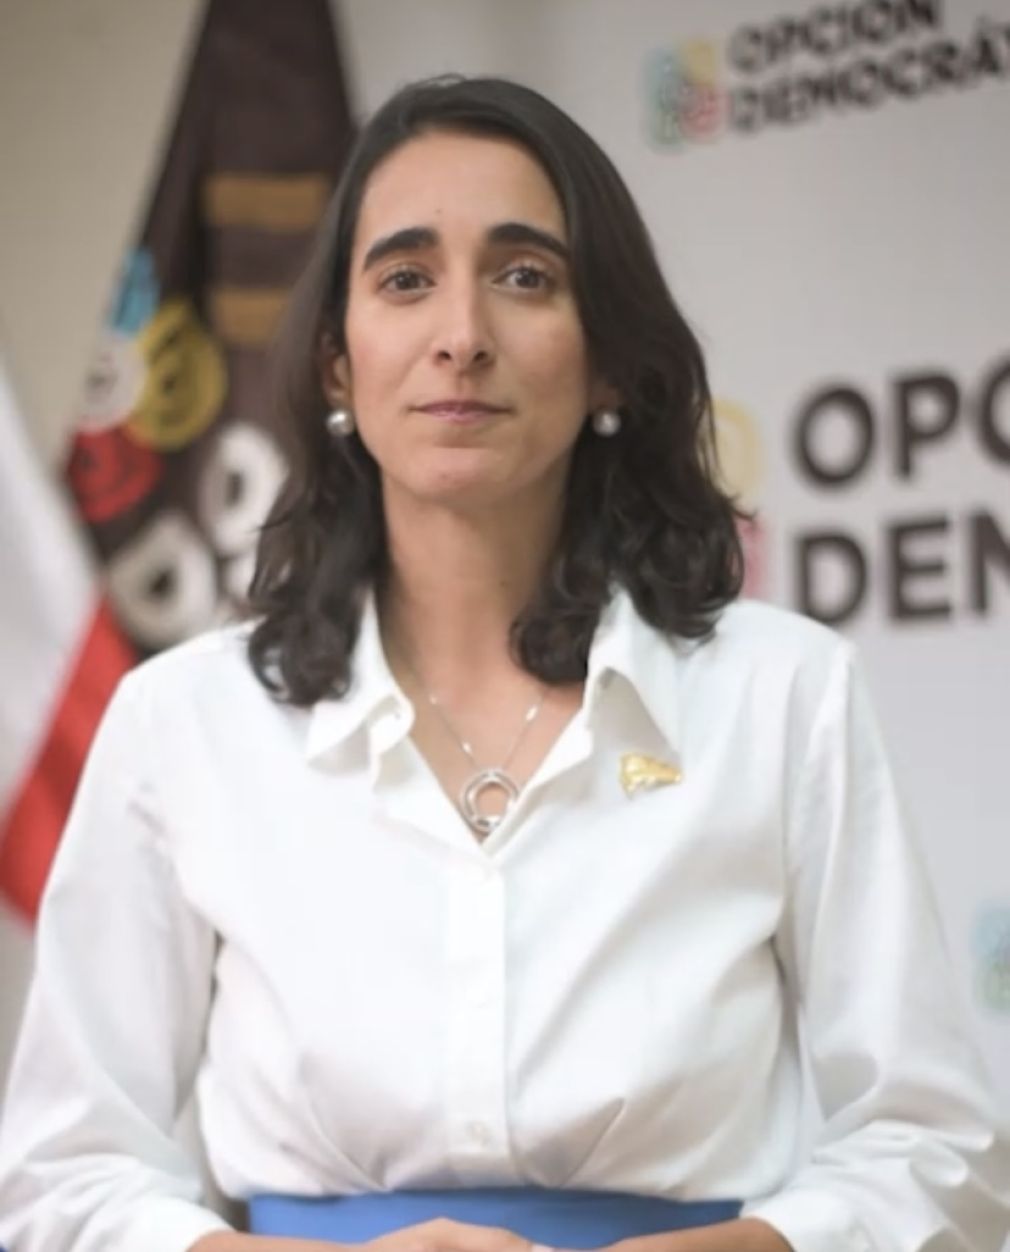 Virginia Antares, candidata presidencial por el Partido Opción Democrática.